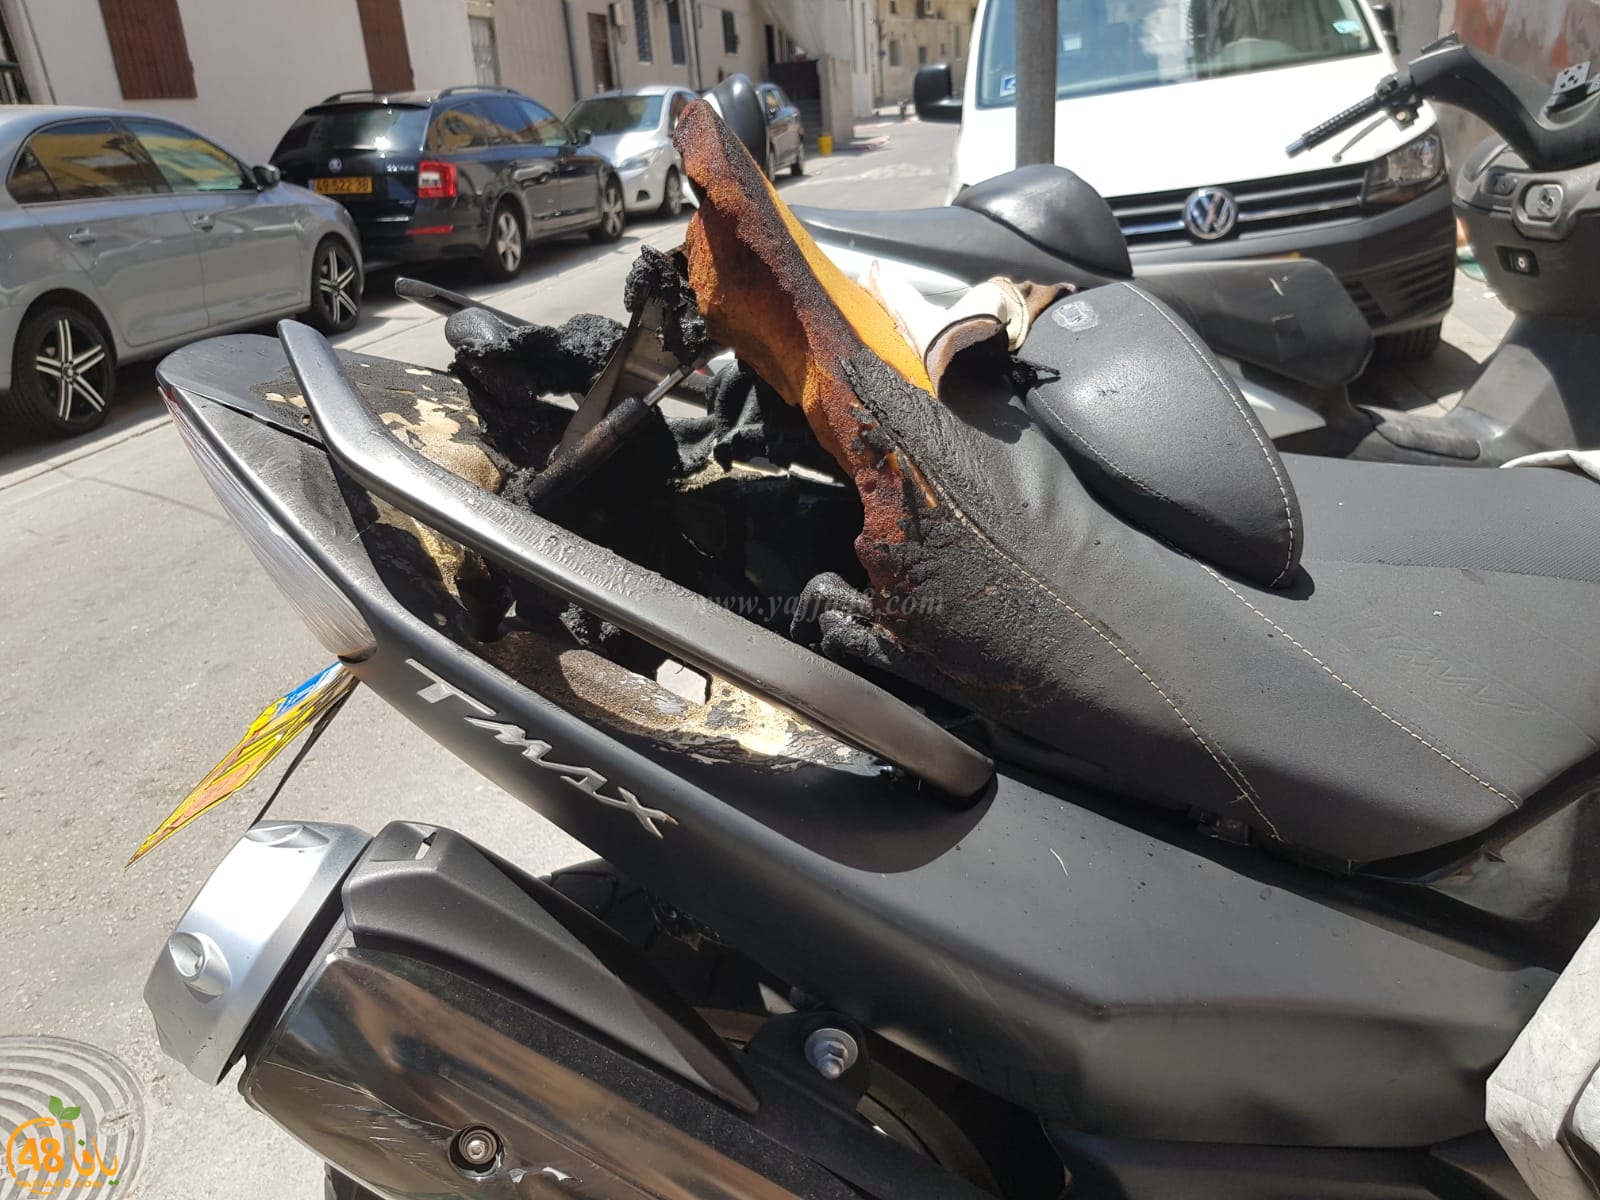  بعد احتراق دراجته - شاب من يافا يحذّر المواطنين بعدم ترك ولاعة السجائر داخل الدراجة 